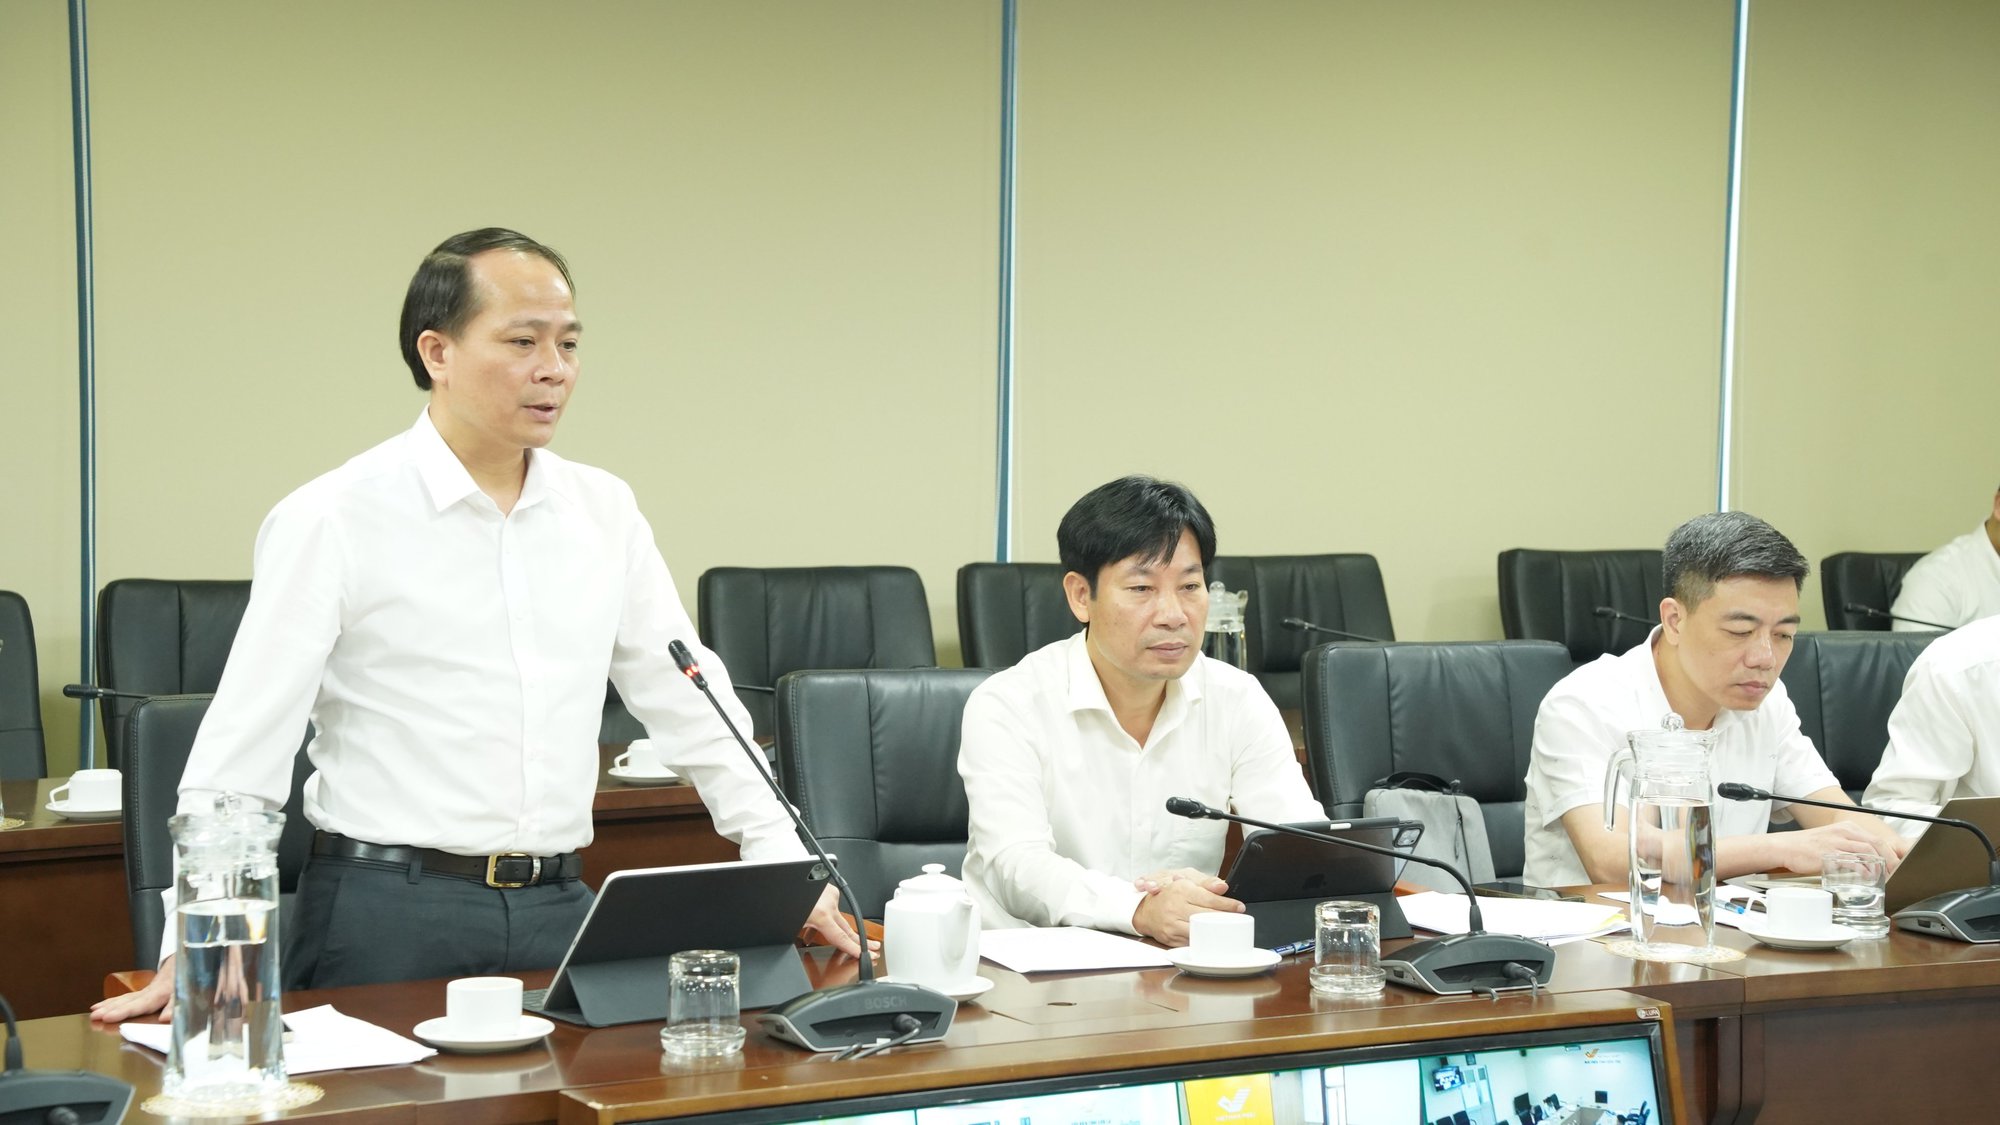  Hội Nông dân Việt Nam, Tổng công ty Bưu điện Việt Nam sơ kết 6 tháng đầu năm thực hiện kế hoạch phối hợp - Ảnh 1.